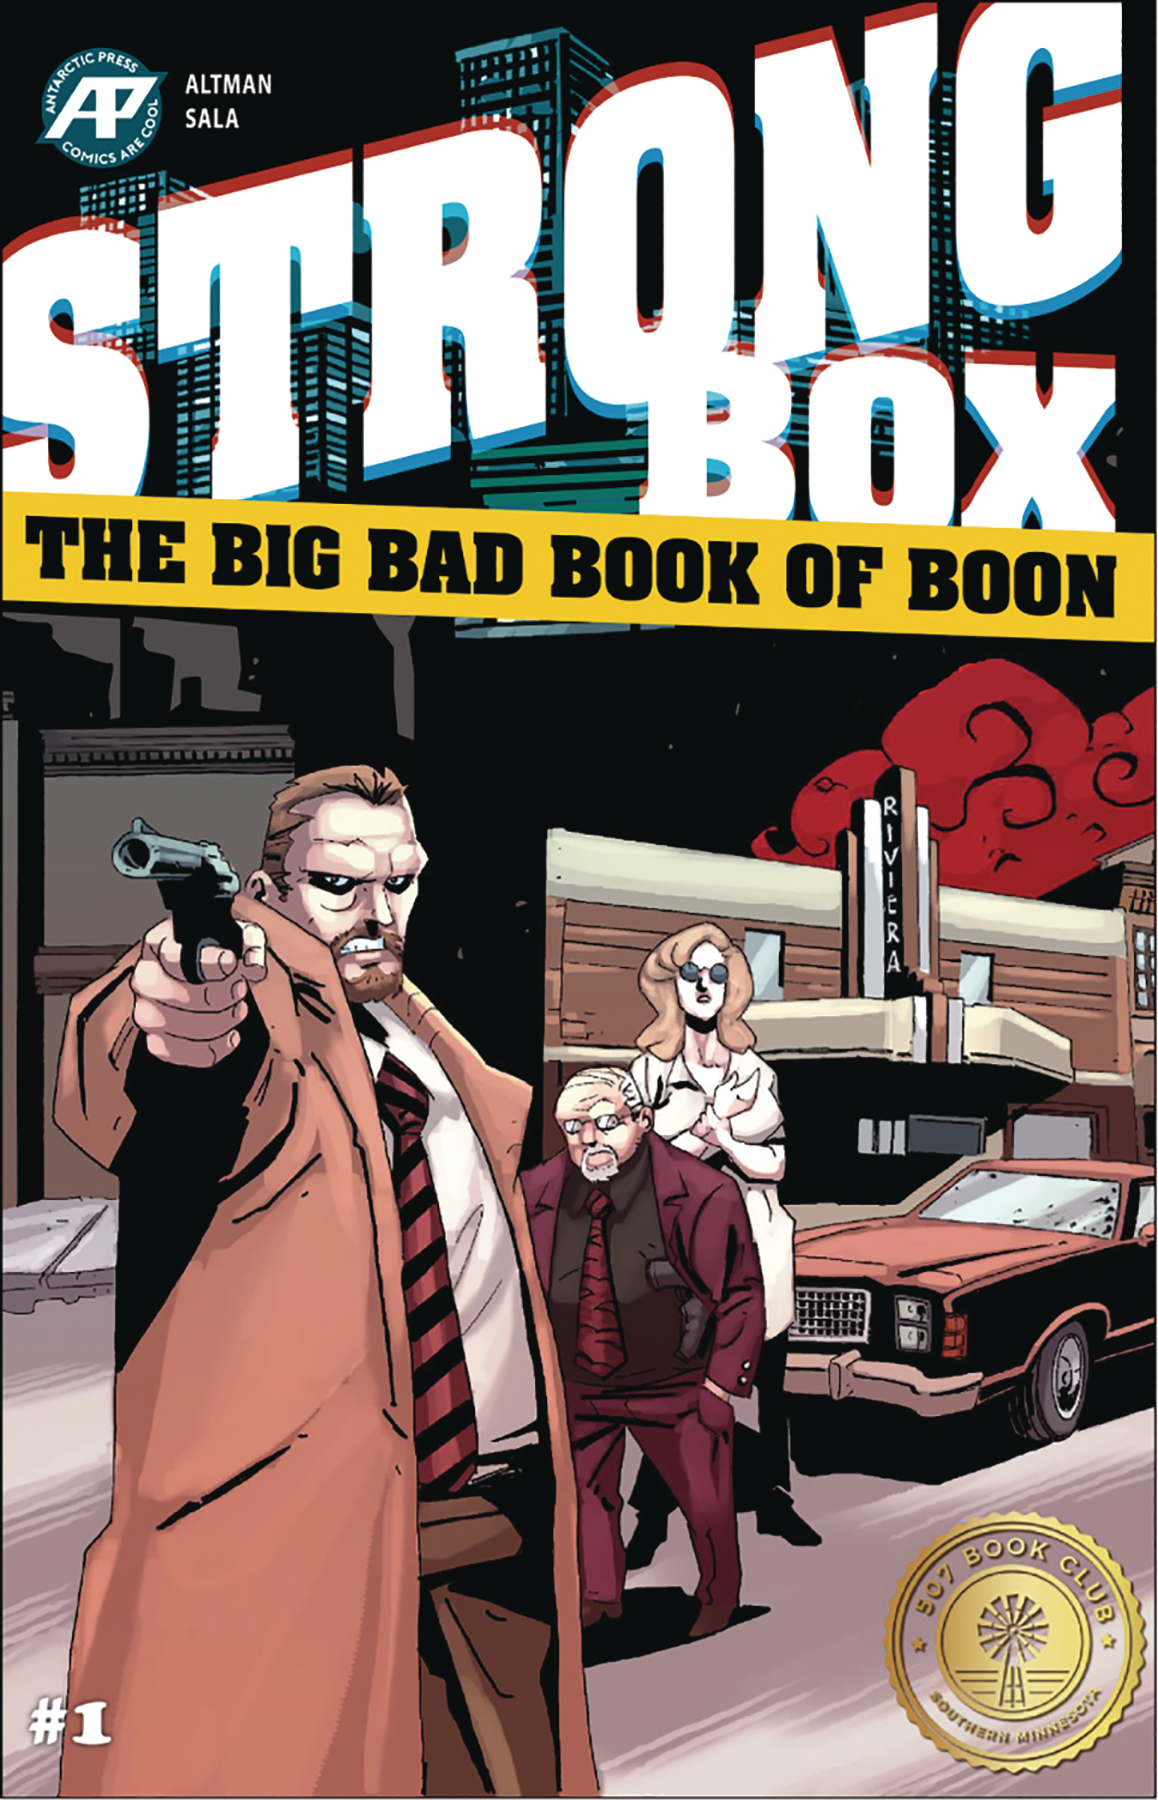 Strong Box: Bad Bad Book of Boon no. 1 (2019 Series)